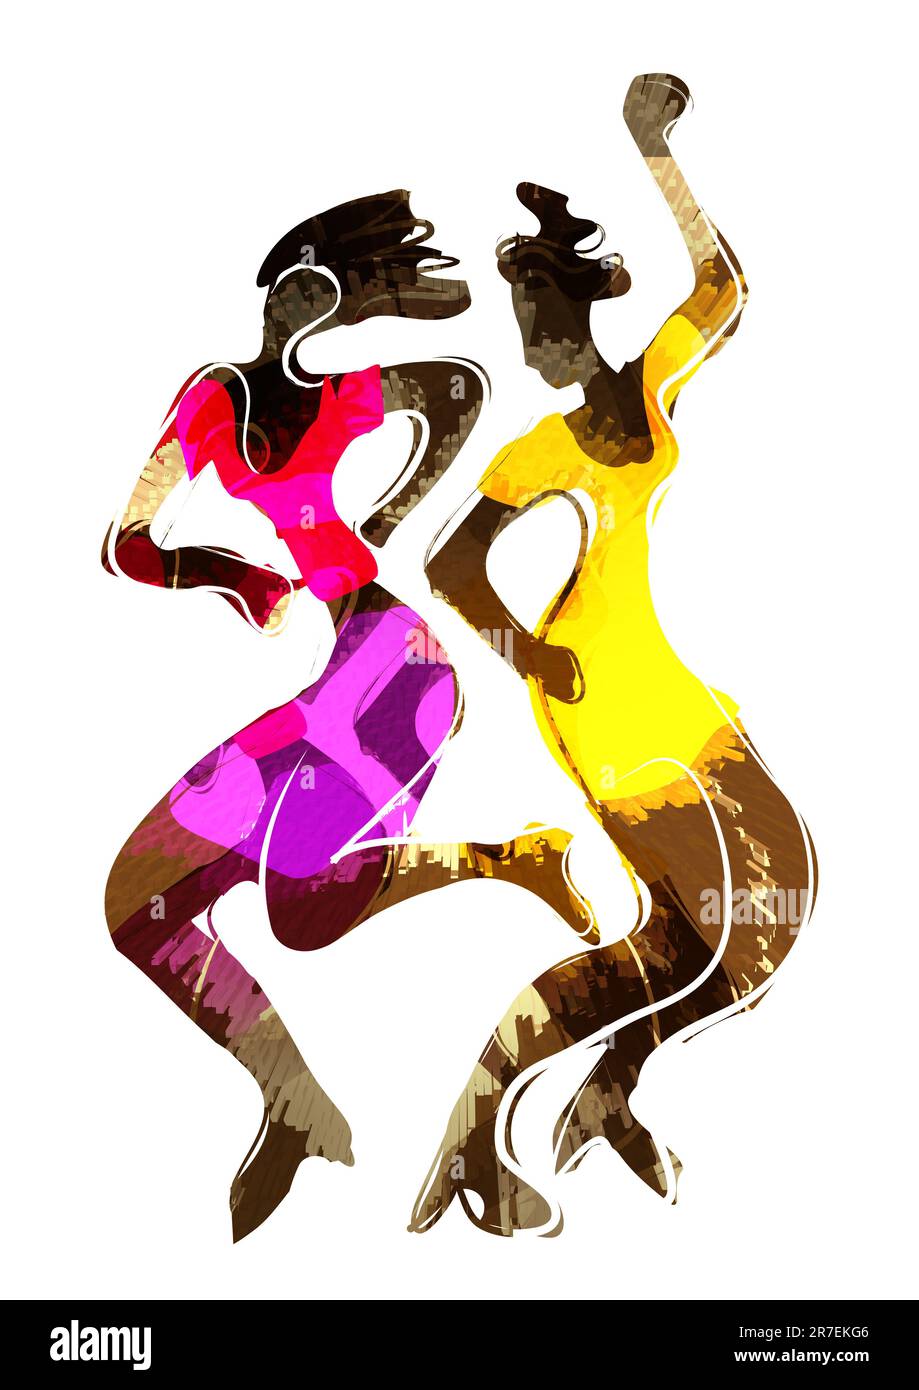 Disco-Tänzerin, attraktive schwarze Mädchen. Ausdrucksstarke, farbenfrohe Illustration von zwei tanzenden Frauen. Isoliert auf weißem Hintergrund. Stockfoto